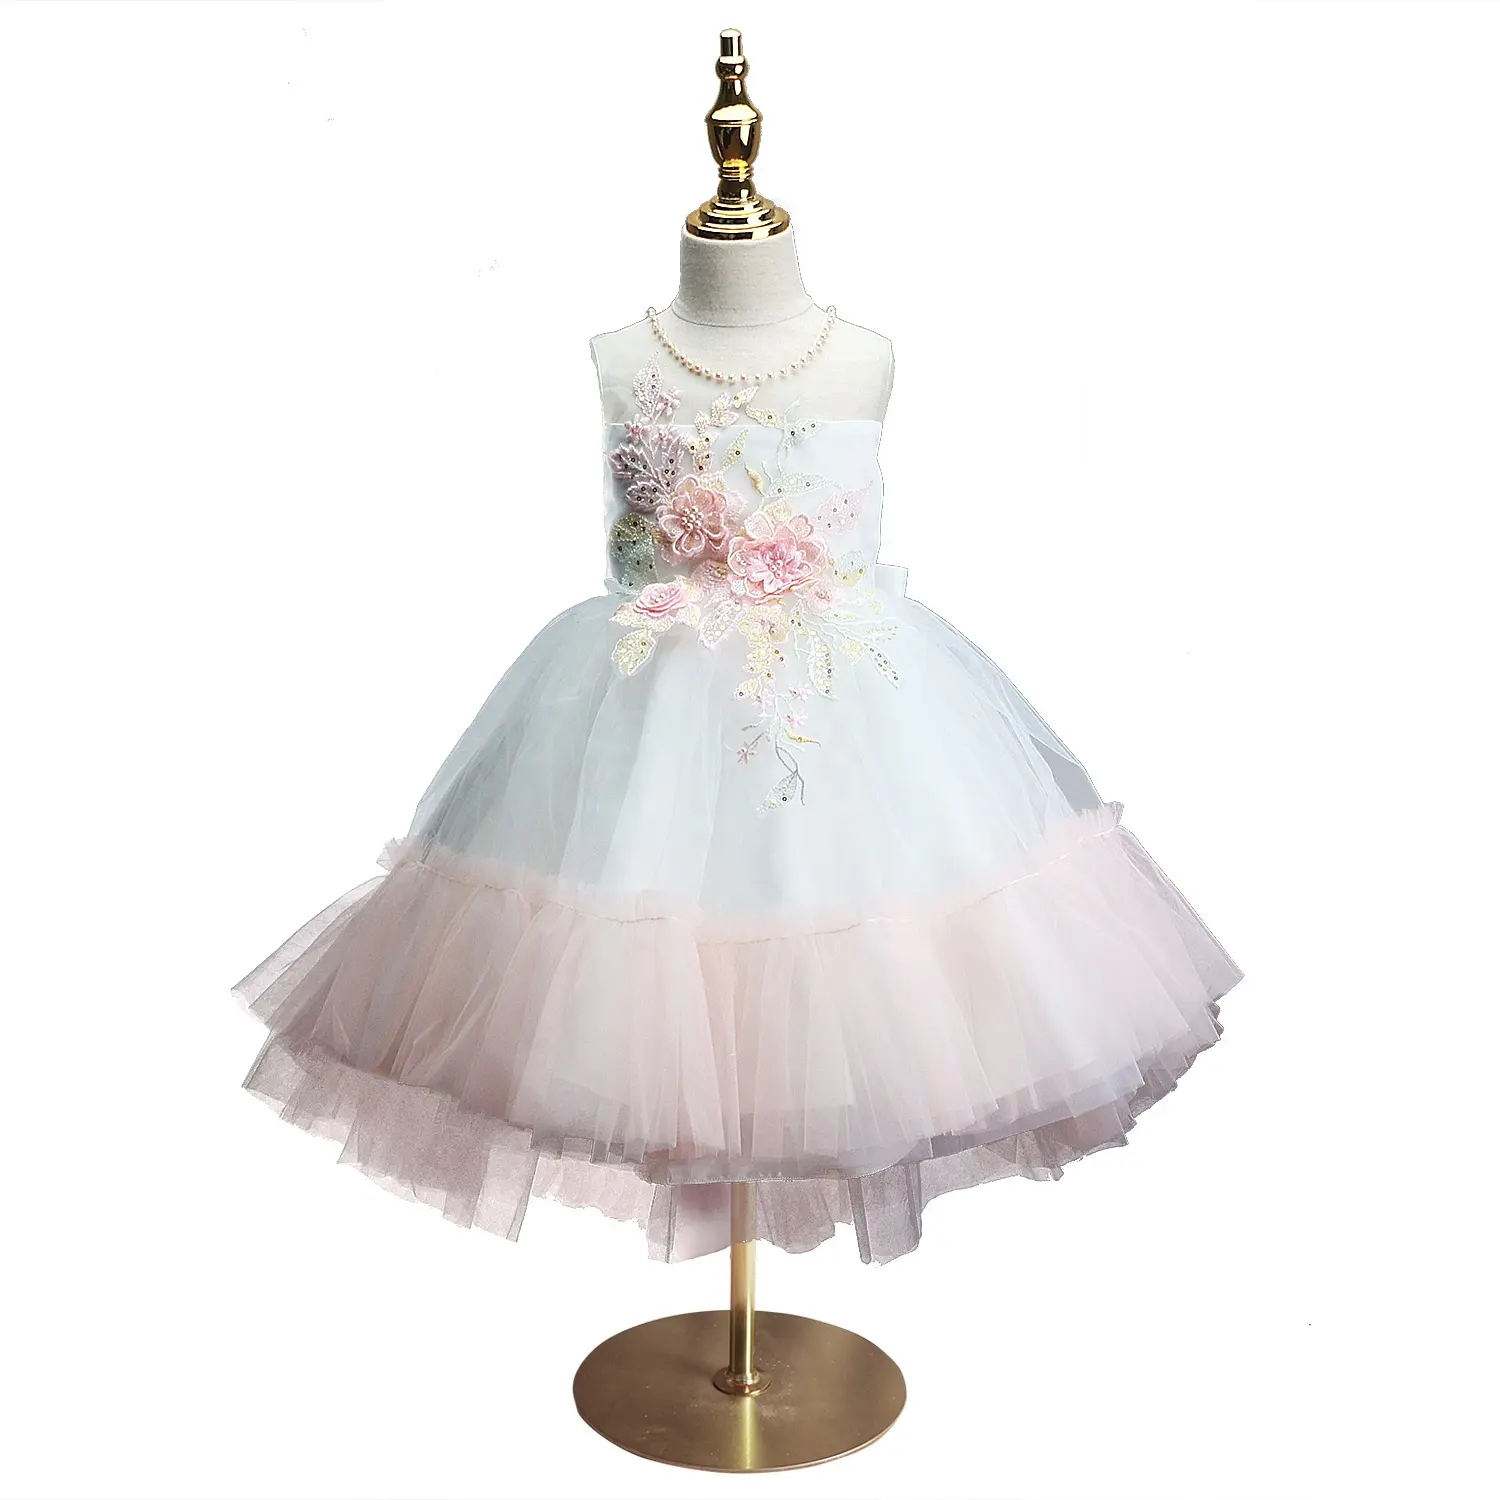 Yaz prenses abiye küçük kızlar için çocuklar için dantel kız elbise düğün için güzel bebek parti elbise için 1 yaşındaki